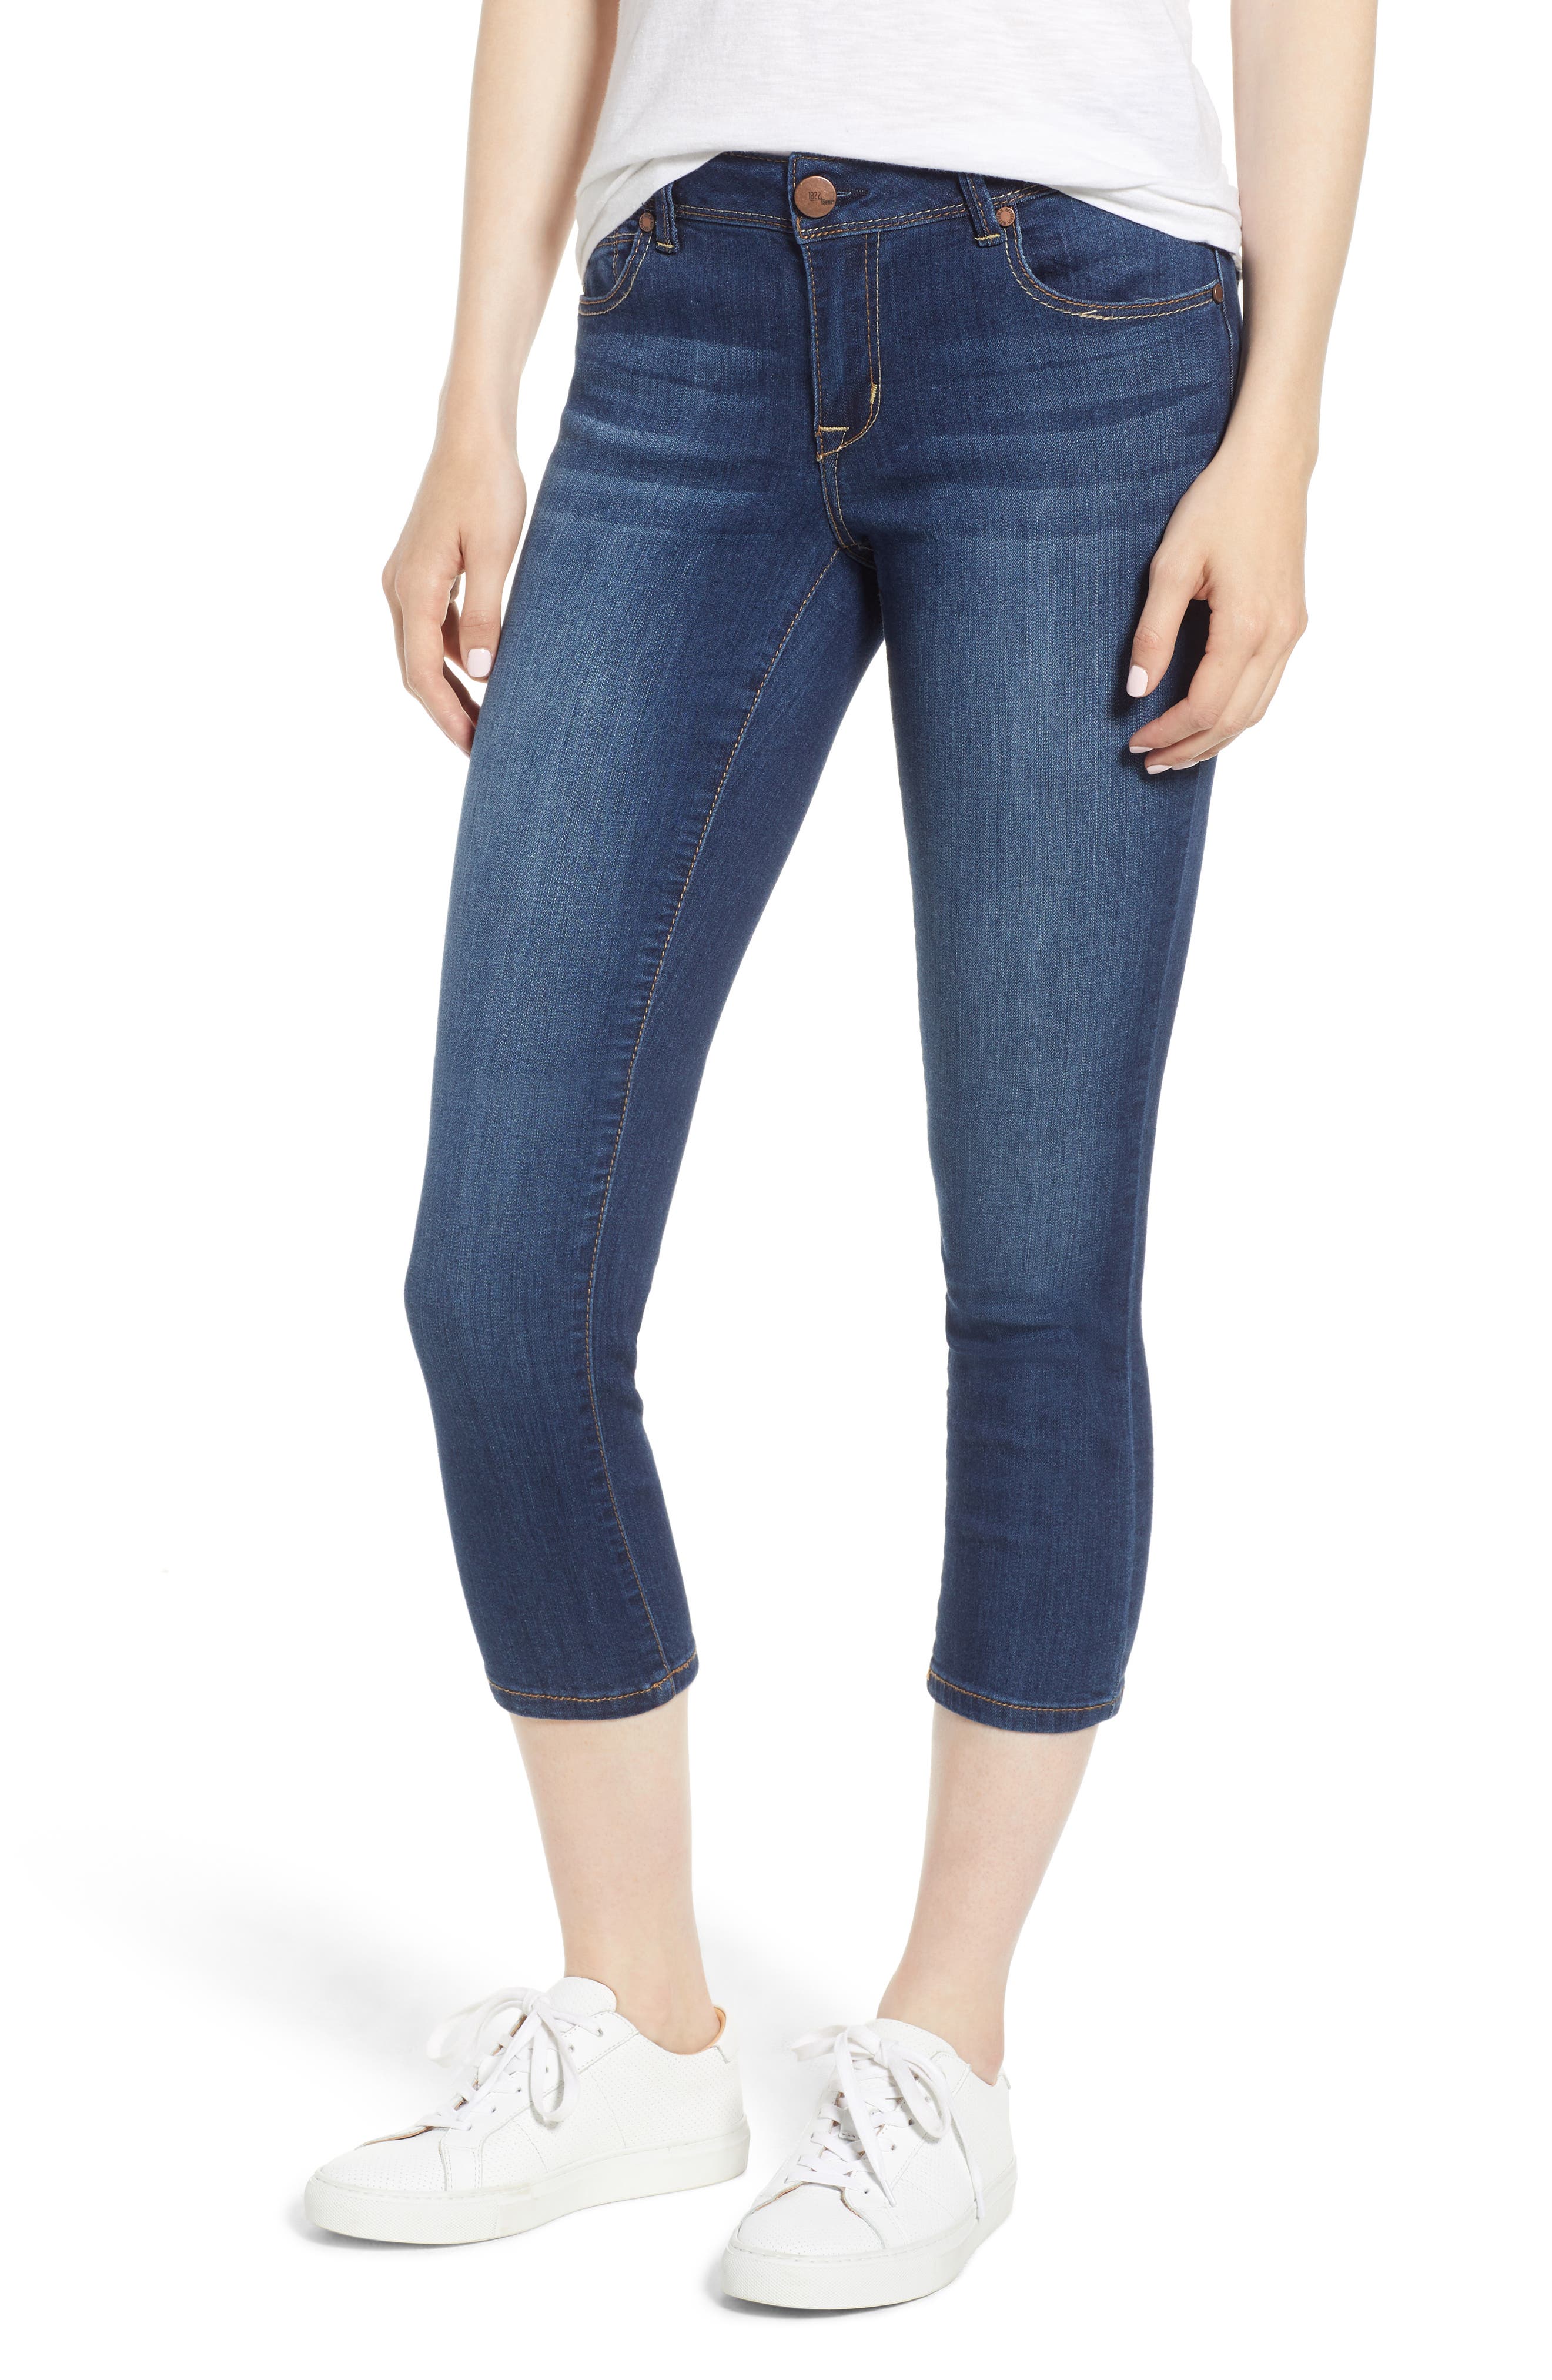 1822 crop skinny jeans